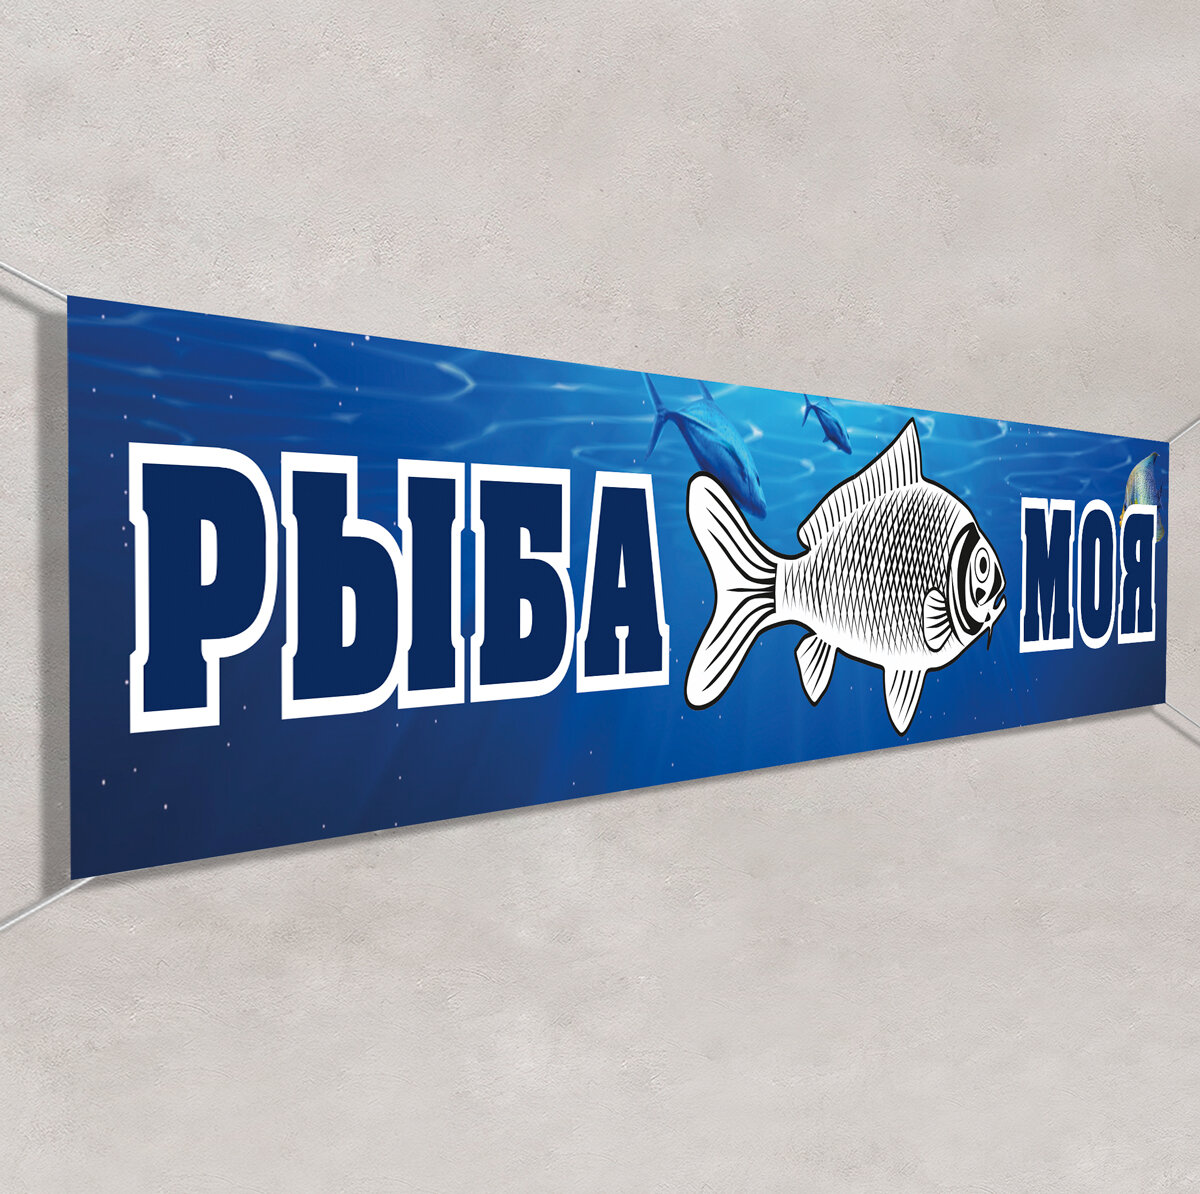 Баннер "Рыба" / Вывеска, растяжка для рекламы Рыбной лавки / 1.5x0.75 м.